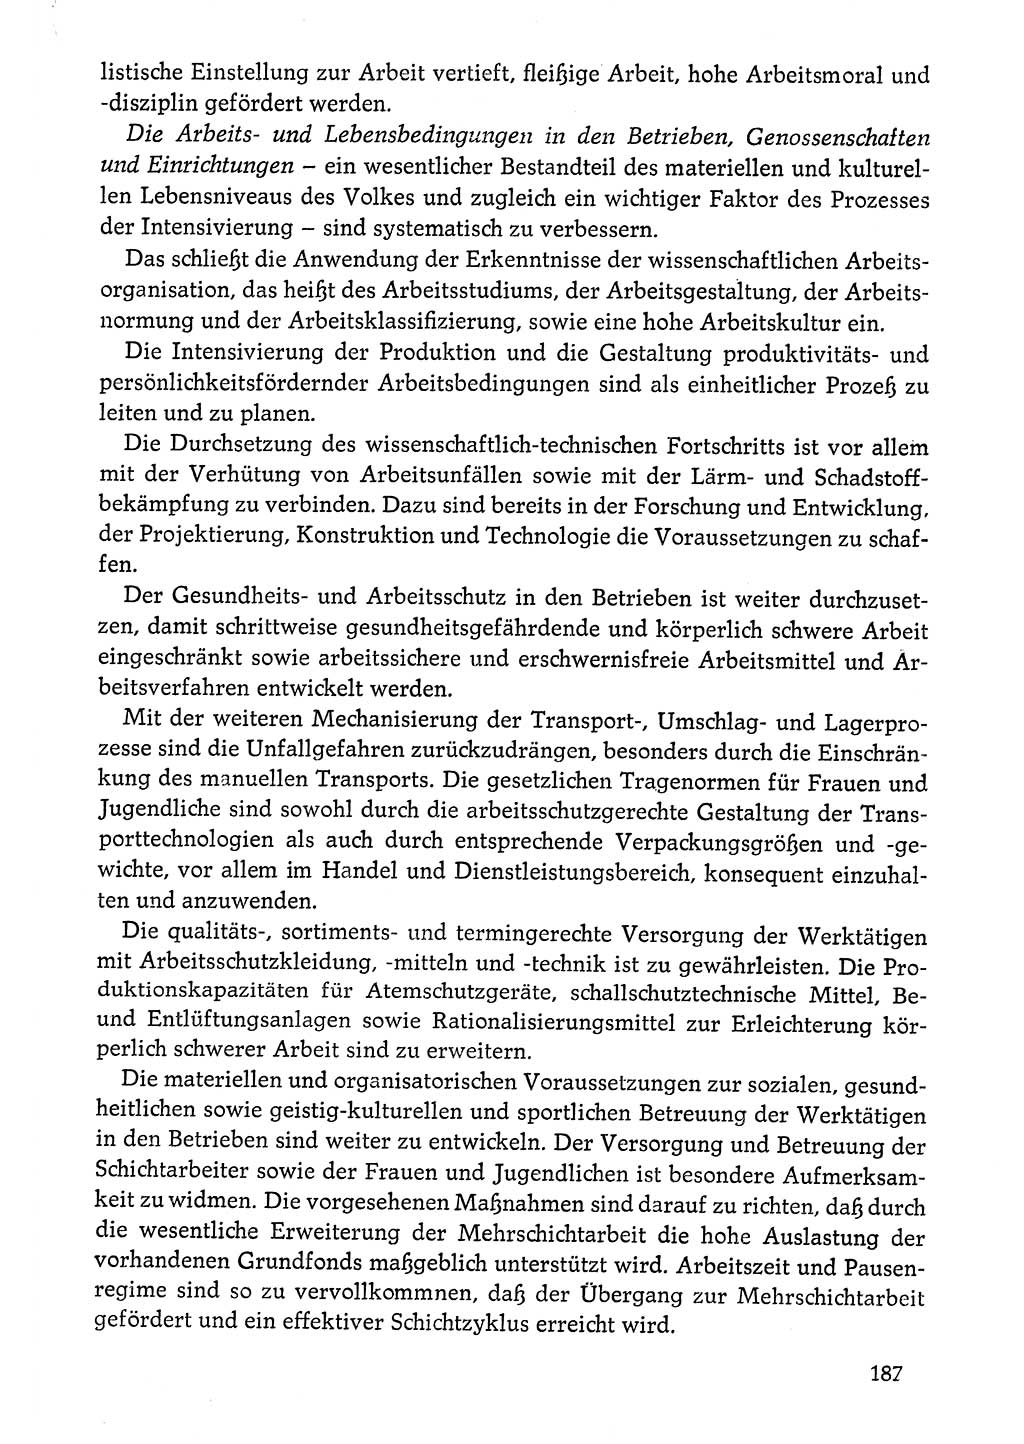 Dokumente der Sozialistischen Einheitspartei Deutschlands (SED) [Deutsche Demokratische Republik (DDR)] 1976-1977, Seite 187 (Dok. SED DDR 1976-1977, S. 187)